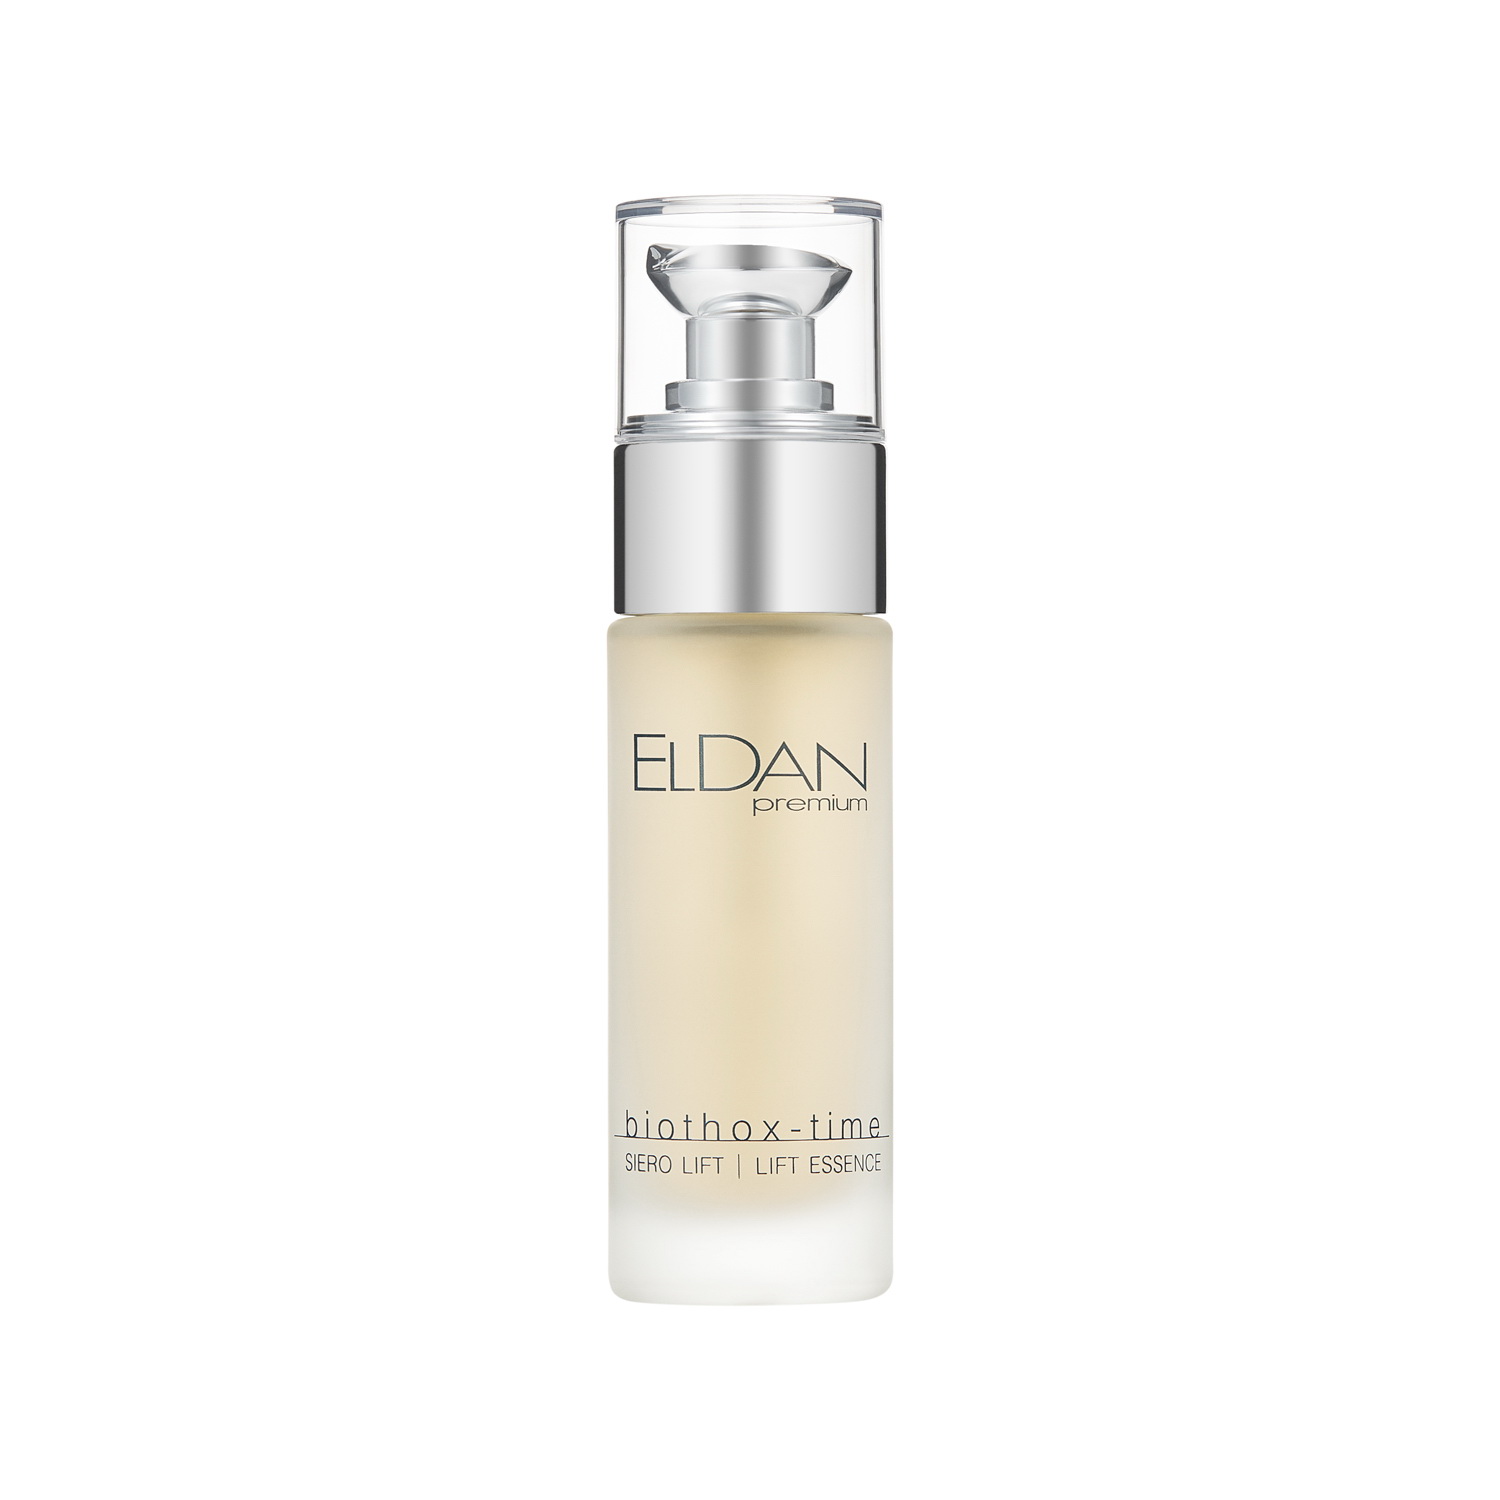 Сыворотка для лица Eldan Cosmetics Premium Biothox Time Lift Essence лифтинг, 30 мл la vallee восстанавливающая сыворотка с эффектом лифтинга precious lift